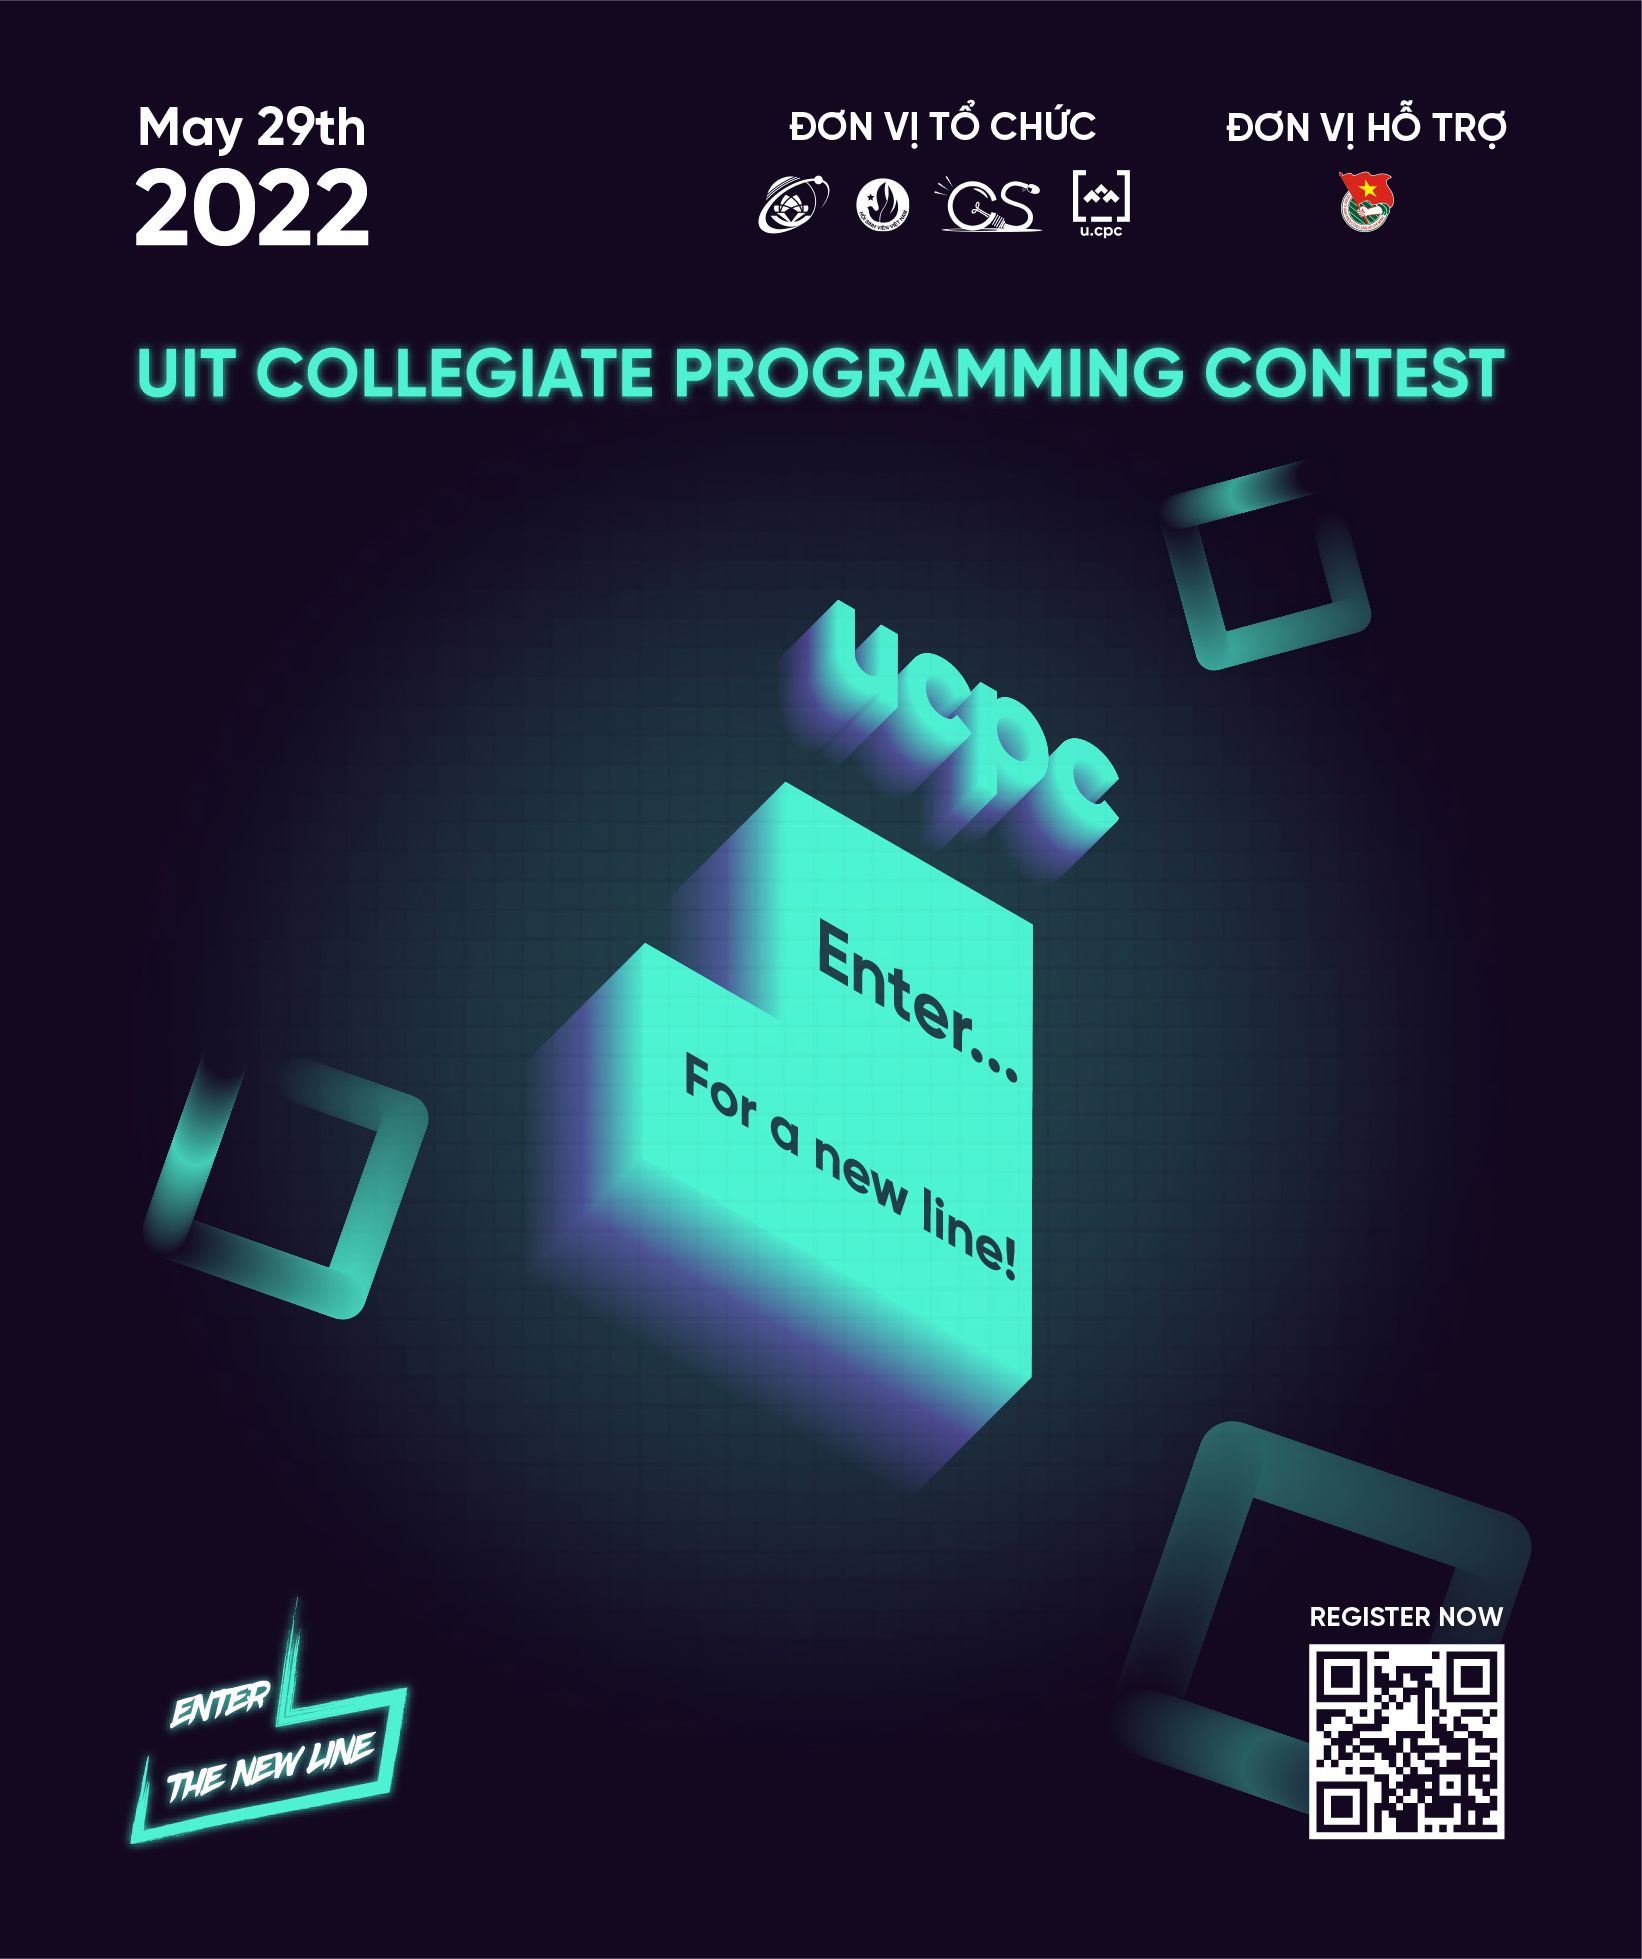 Image: UCPC contest https://ucpc.uit.edu.vn/